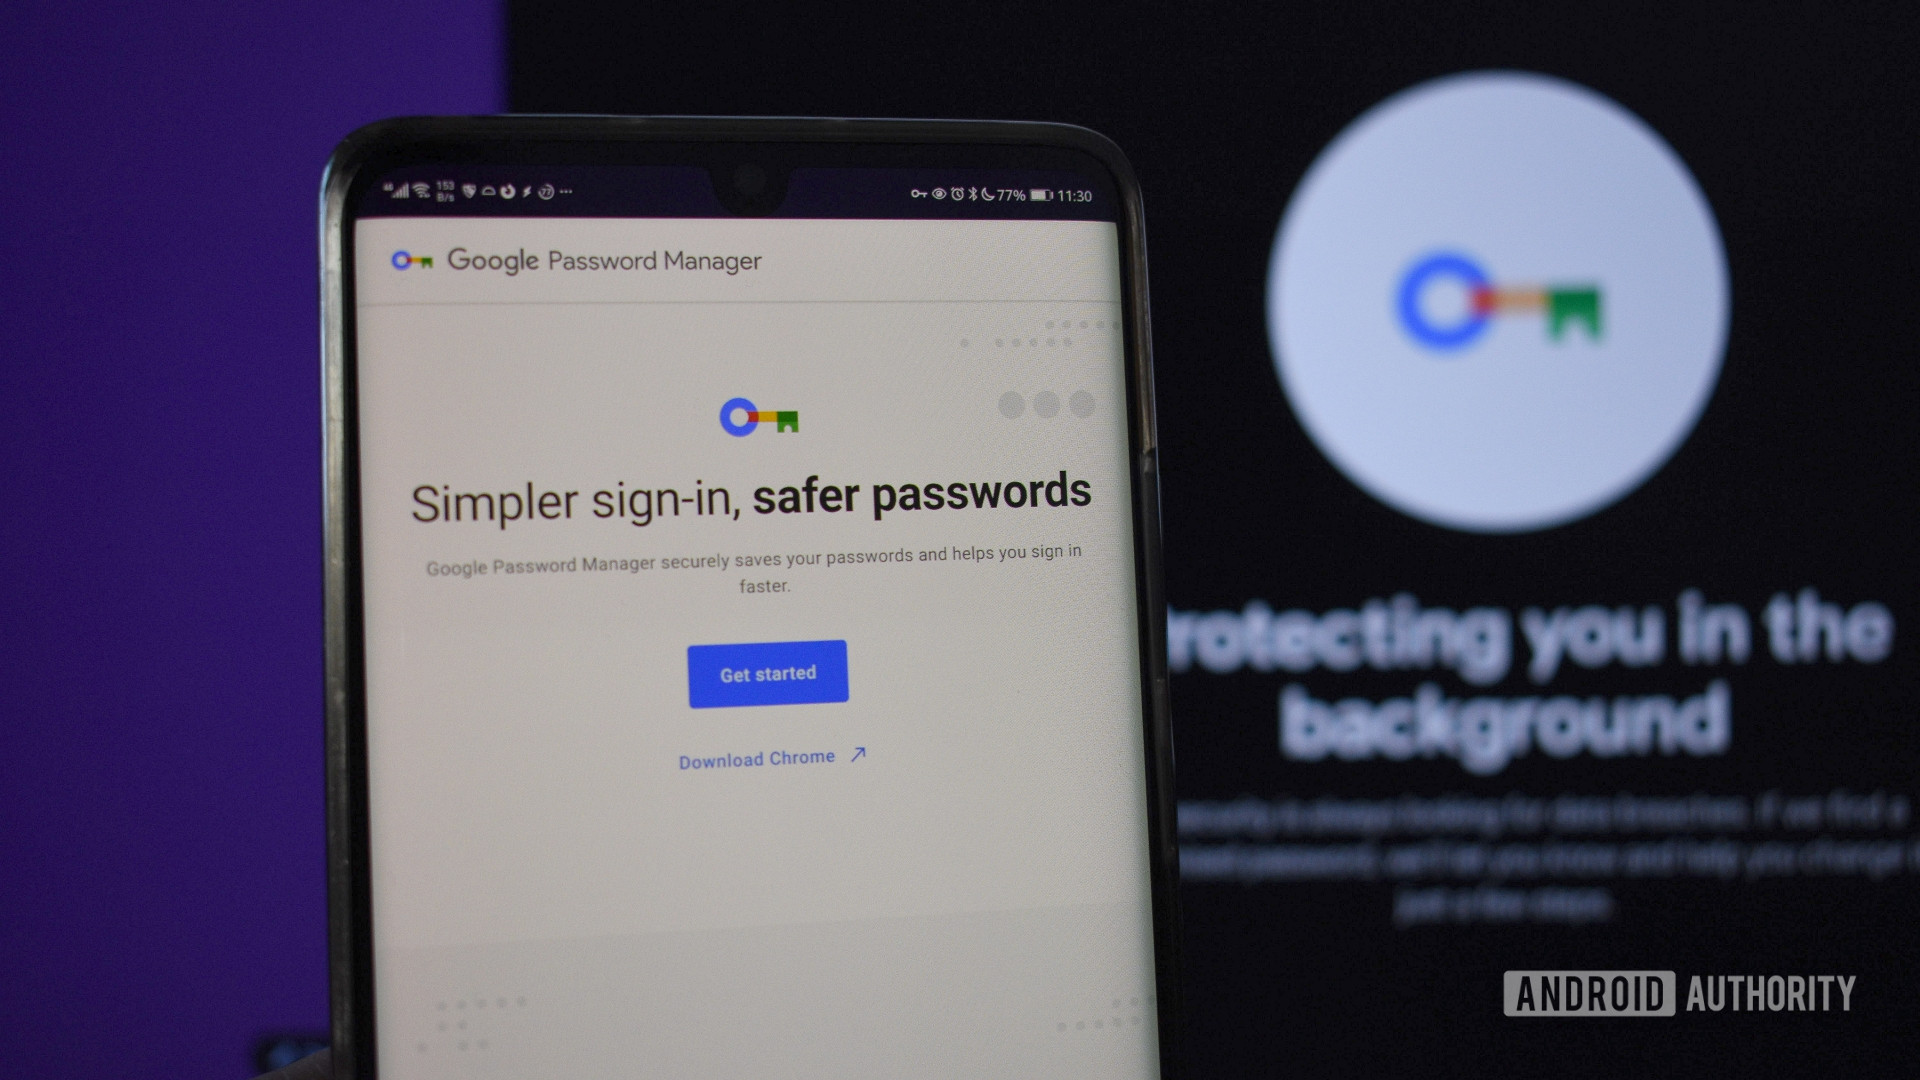 La función para compartir contraseñas de Google Password Manager pronto podría llegar a Android